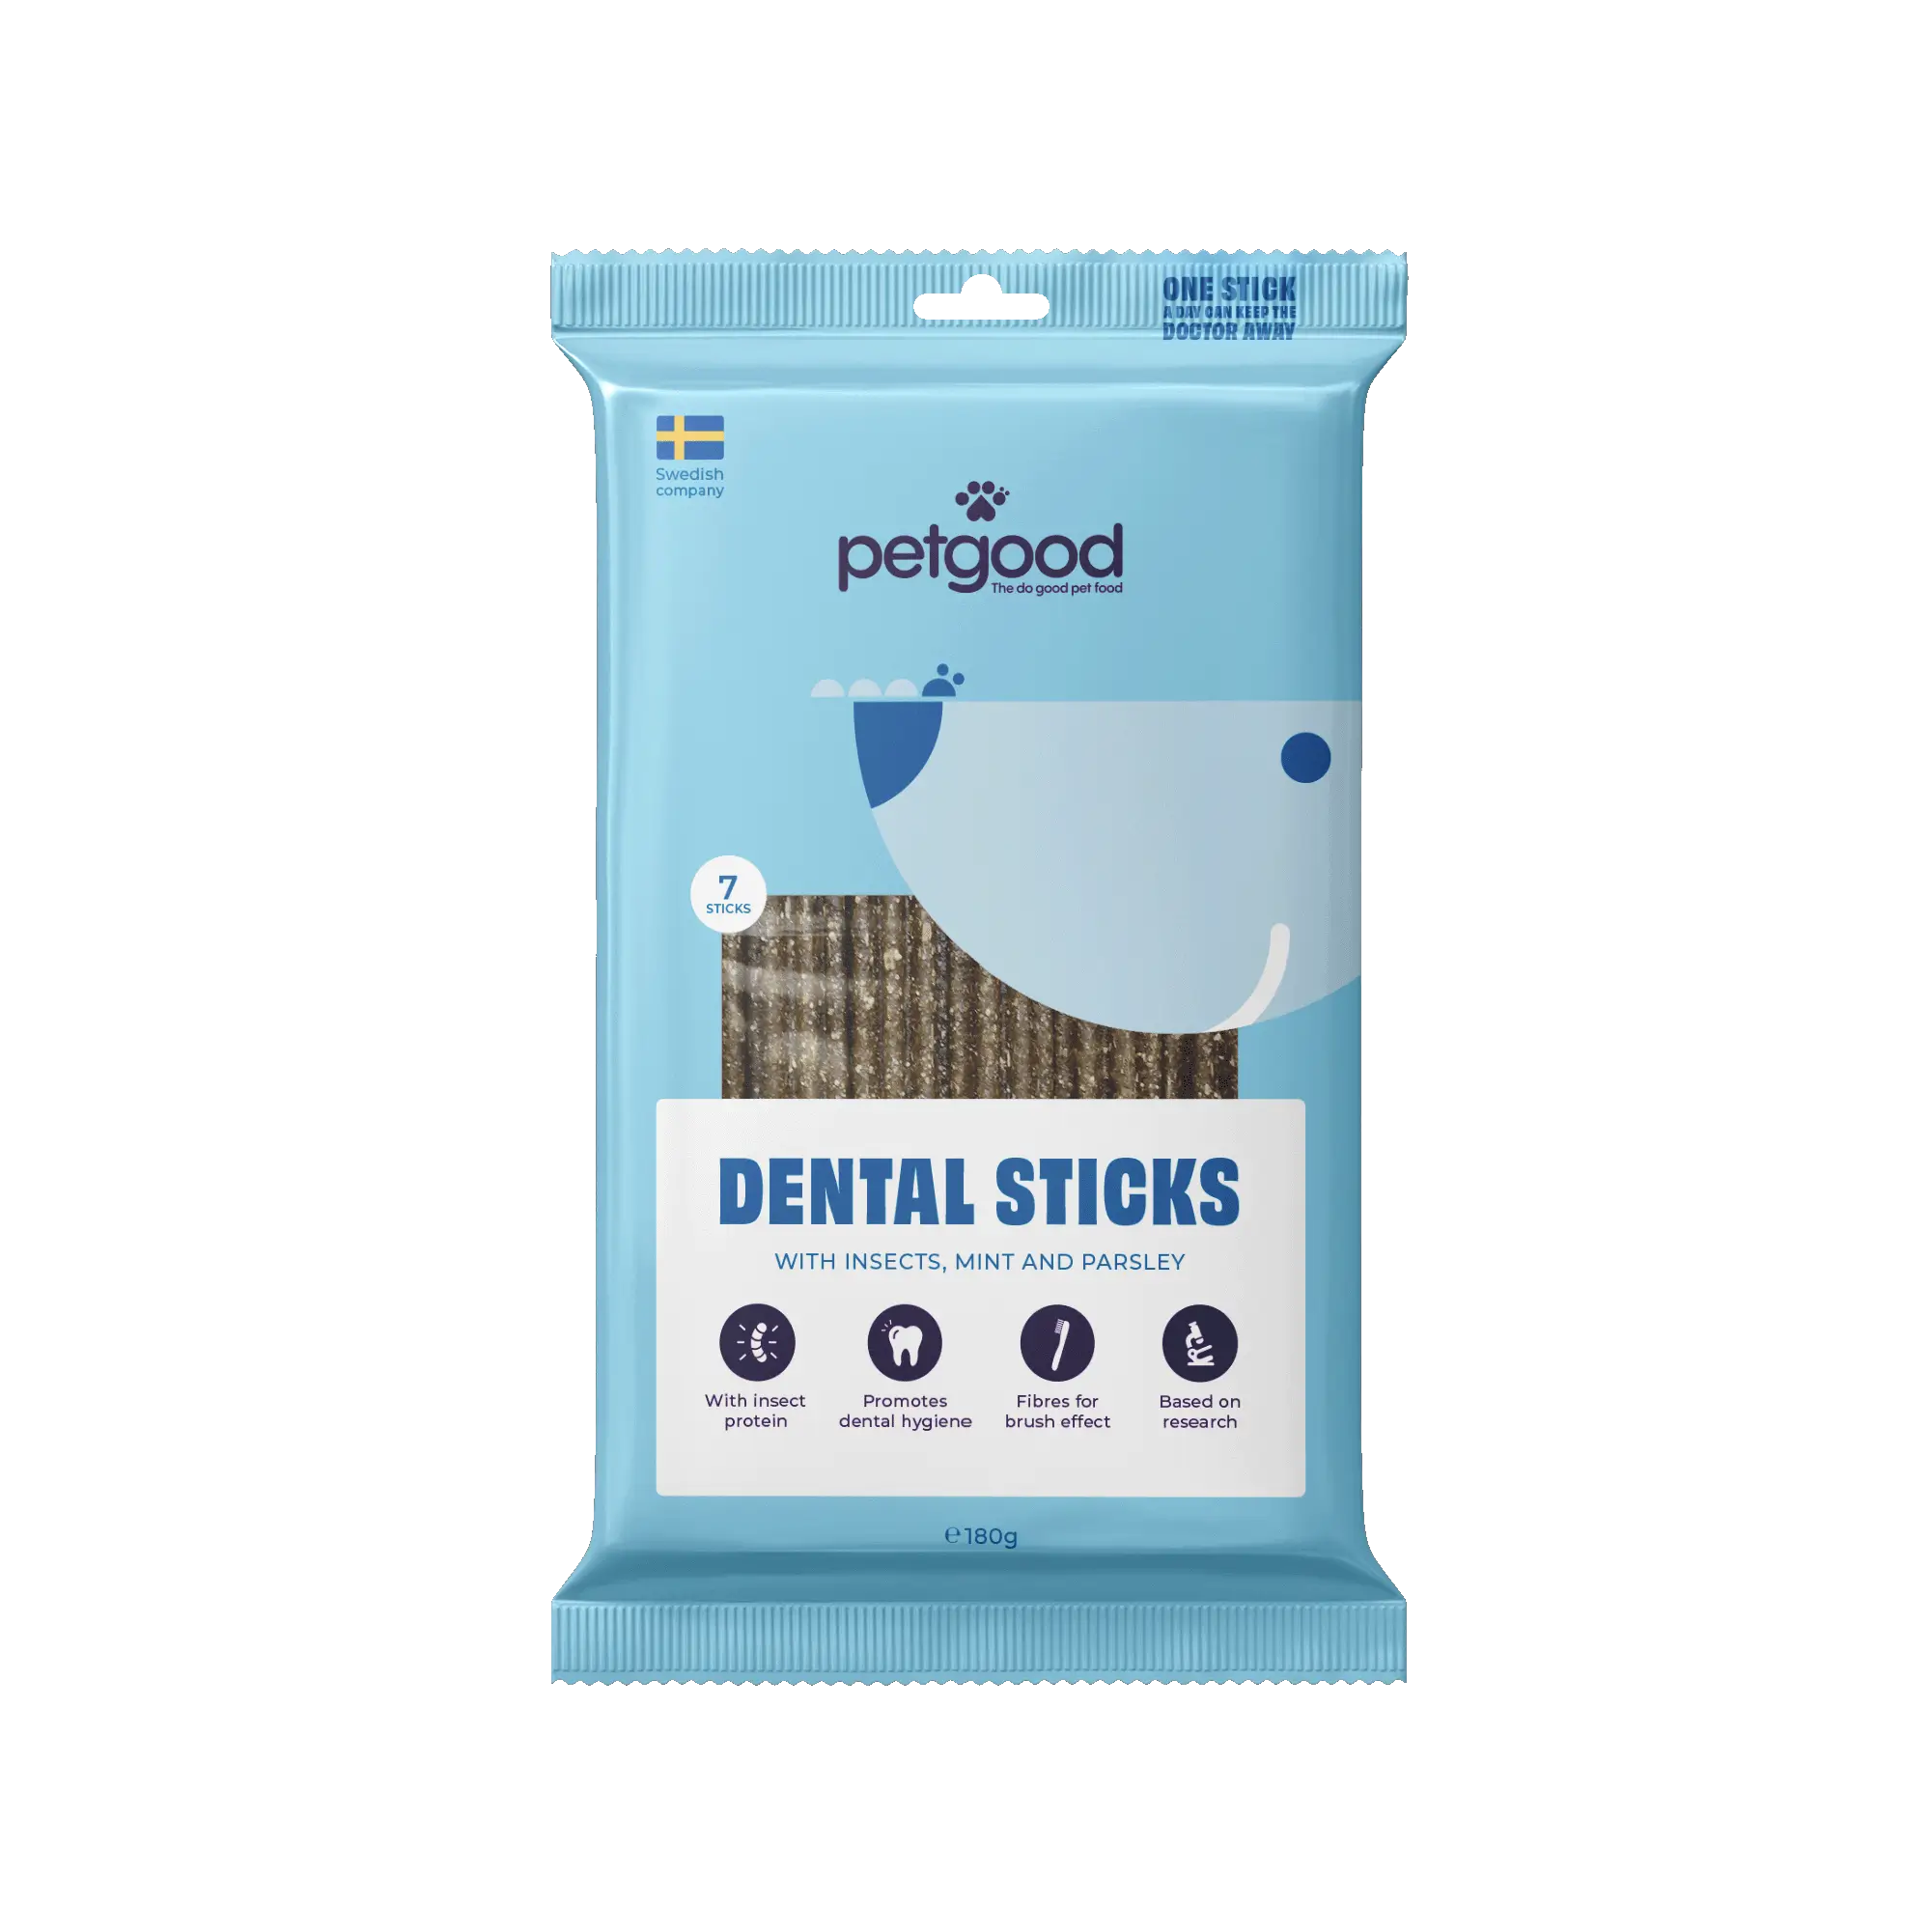 https://a.storyblok.com/f/236174/2000x2001/e3311d1f5c/dog-dental-sticks-2000px.webp